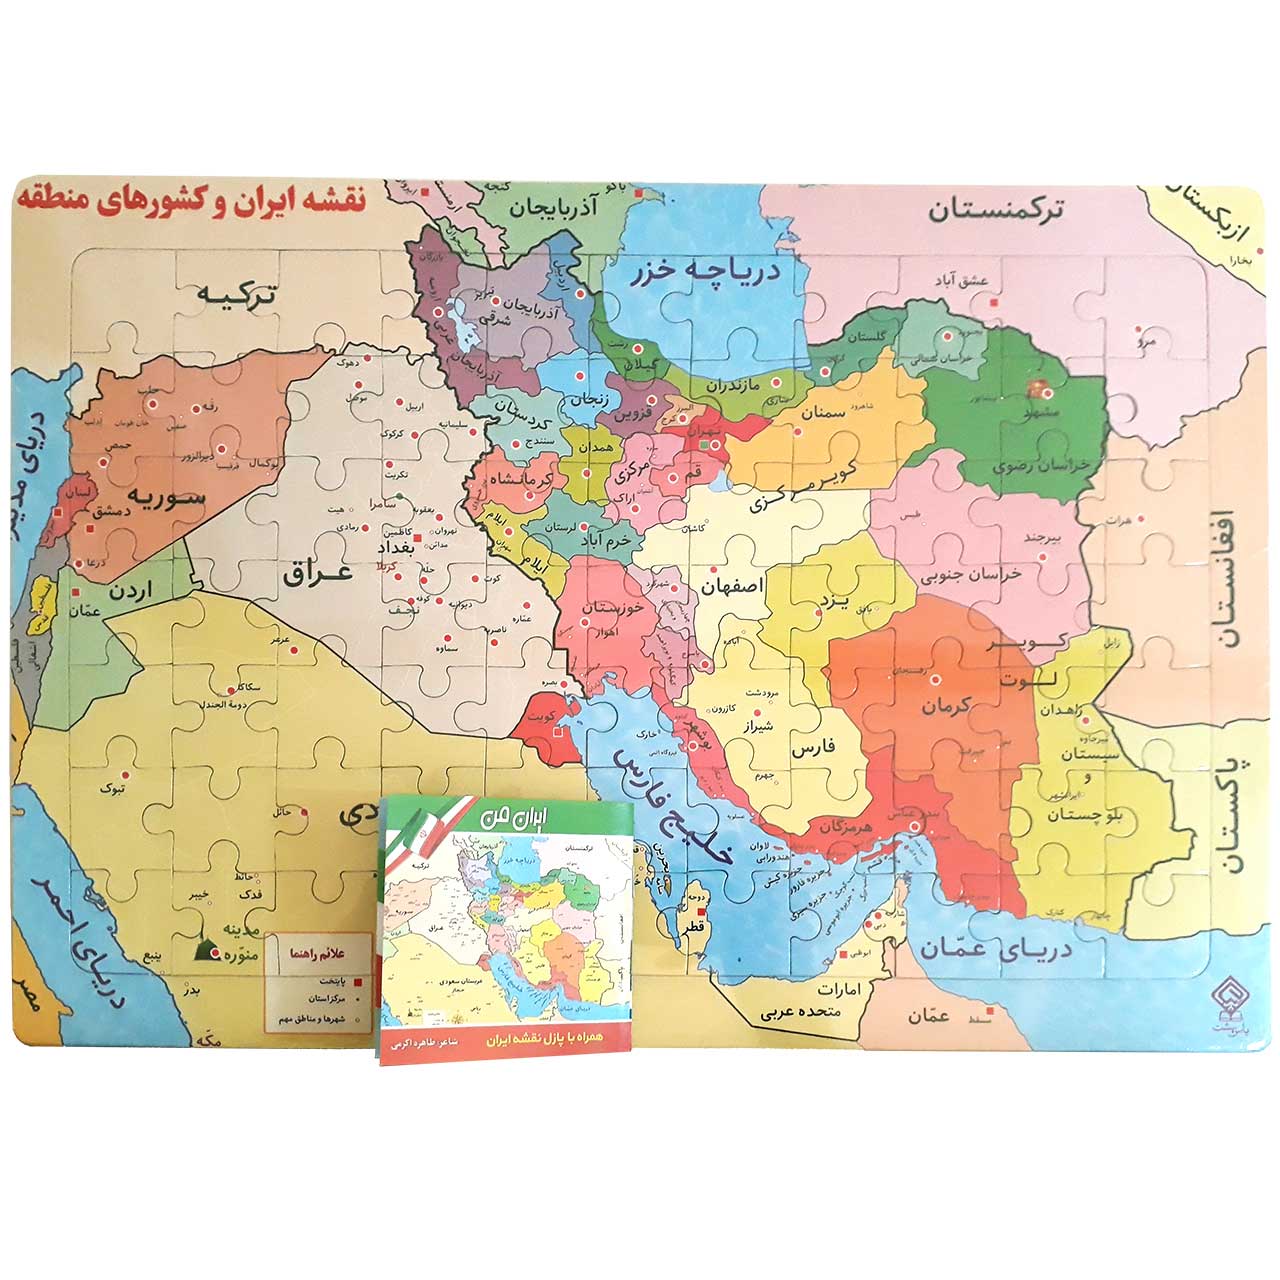 پازل نقشه ایران و کشورهای منطقه به انضمام کتابچه ایران من